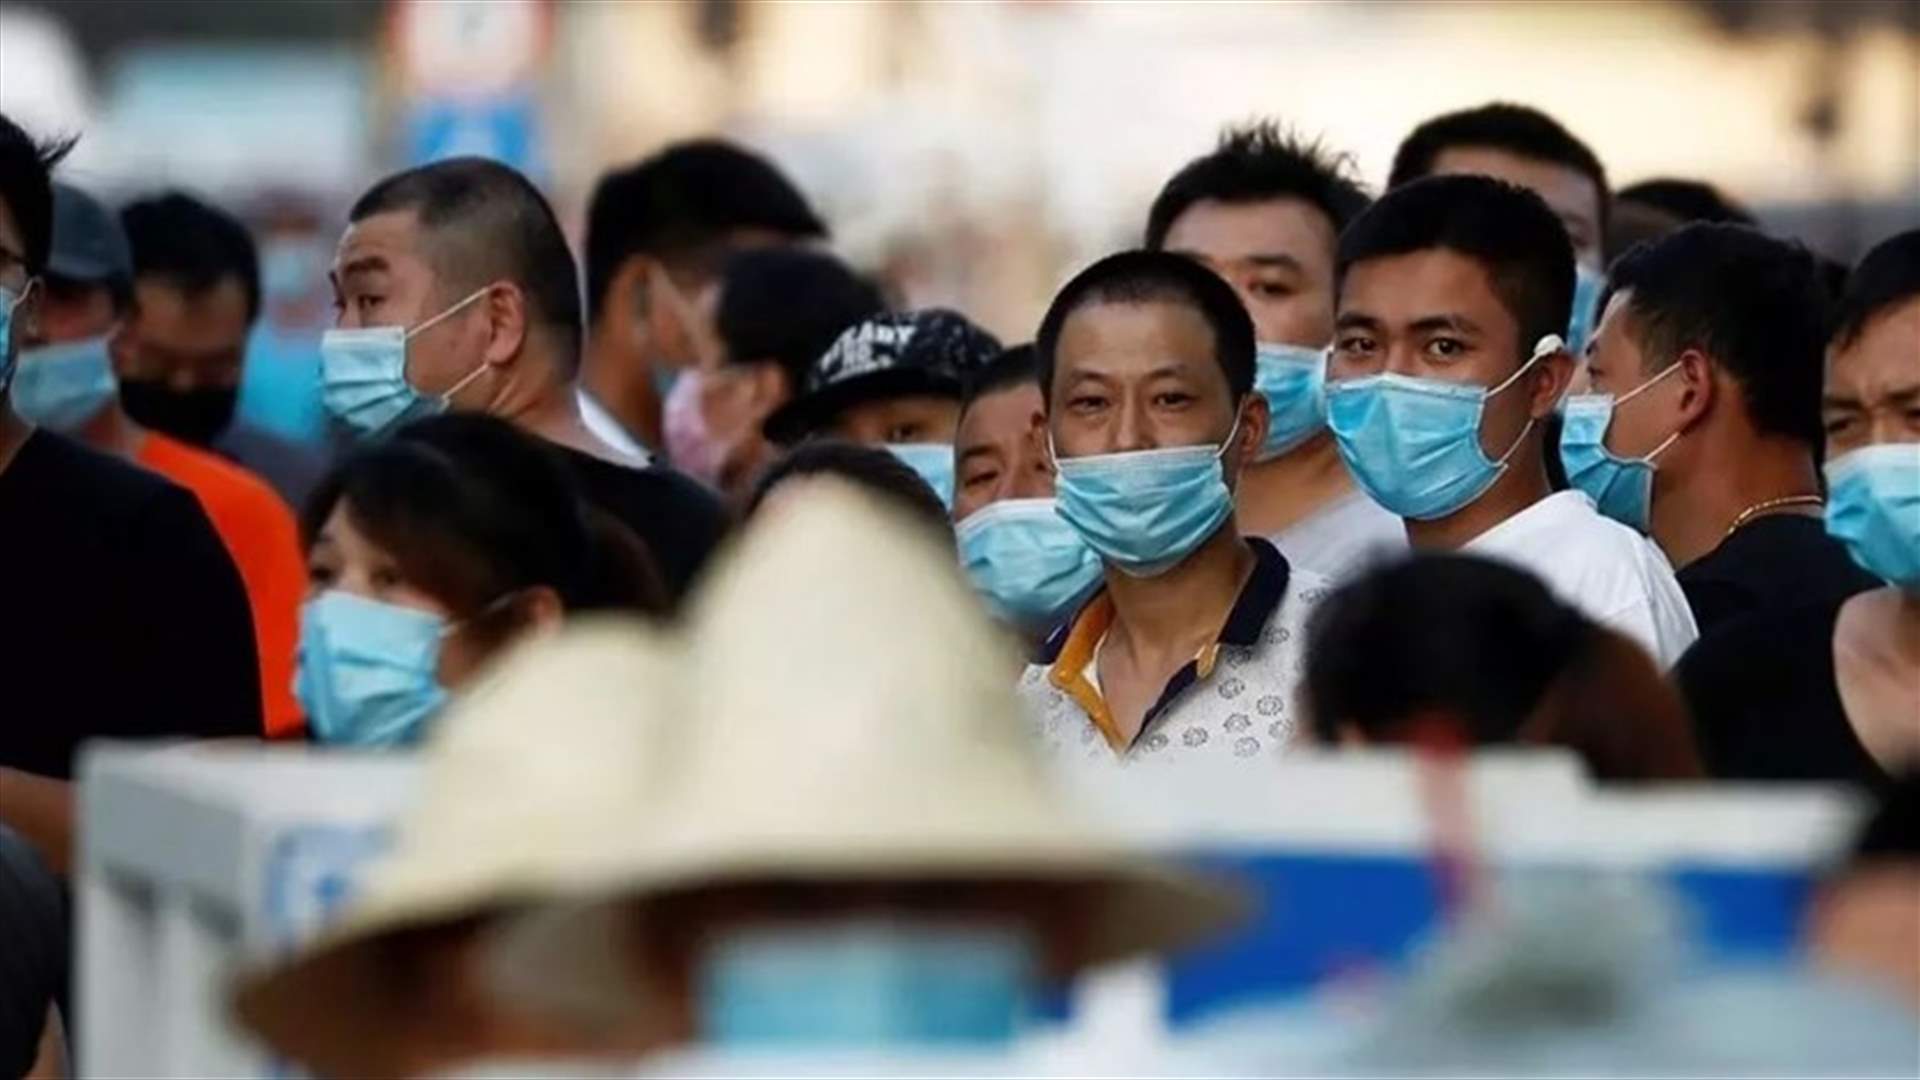 بكين تعلن عدم تسجيل إصابات جديدة بكورونا للمرة الأولى منذ ظهور البؤرة الجديدة